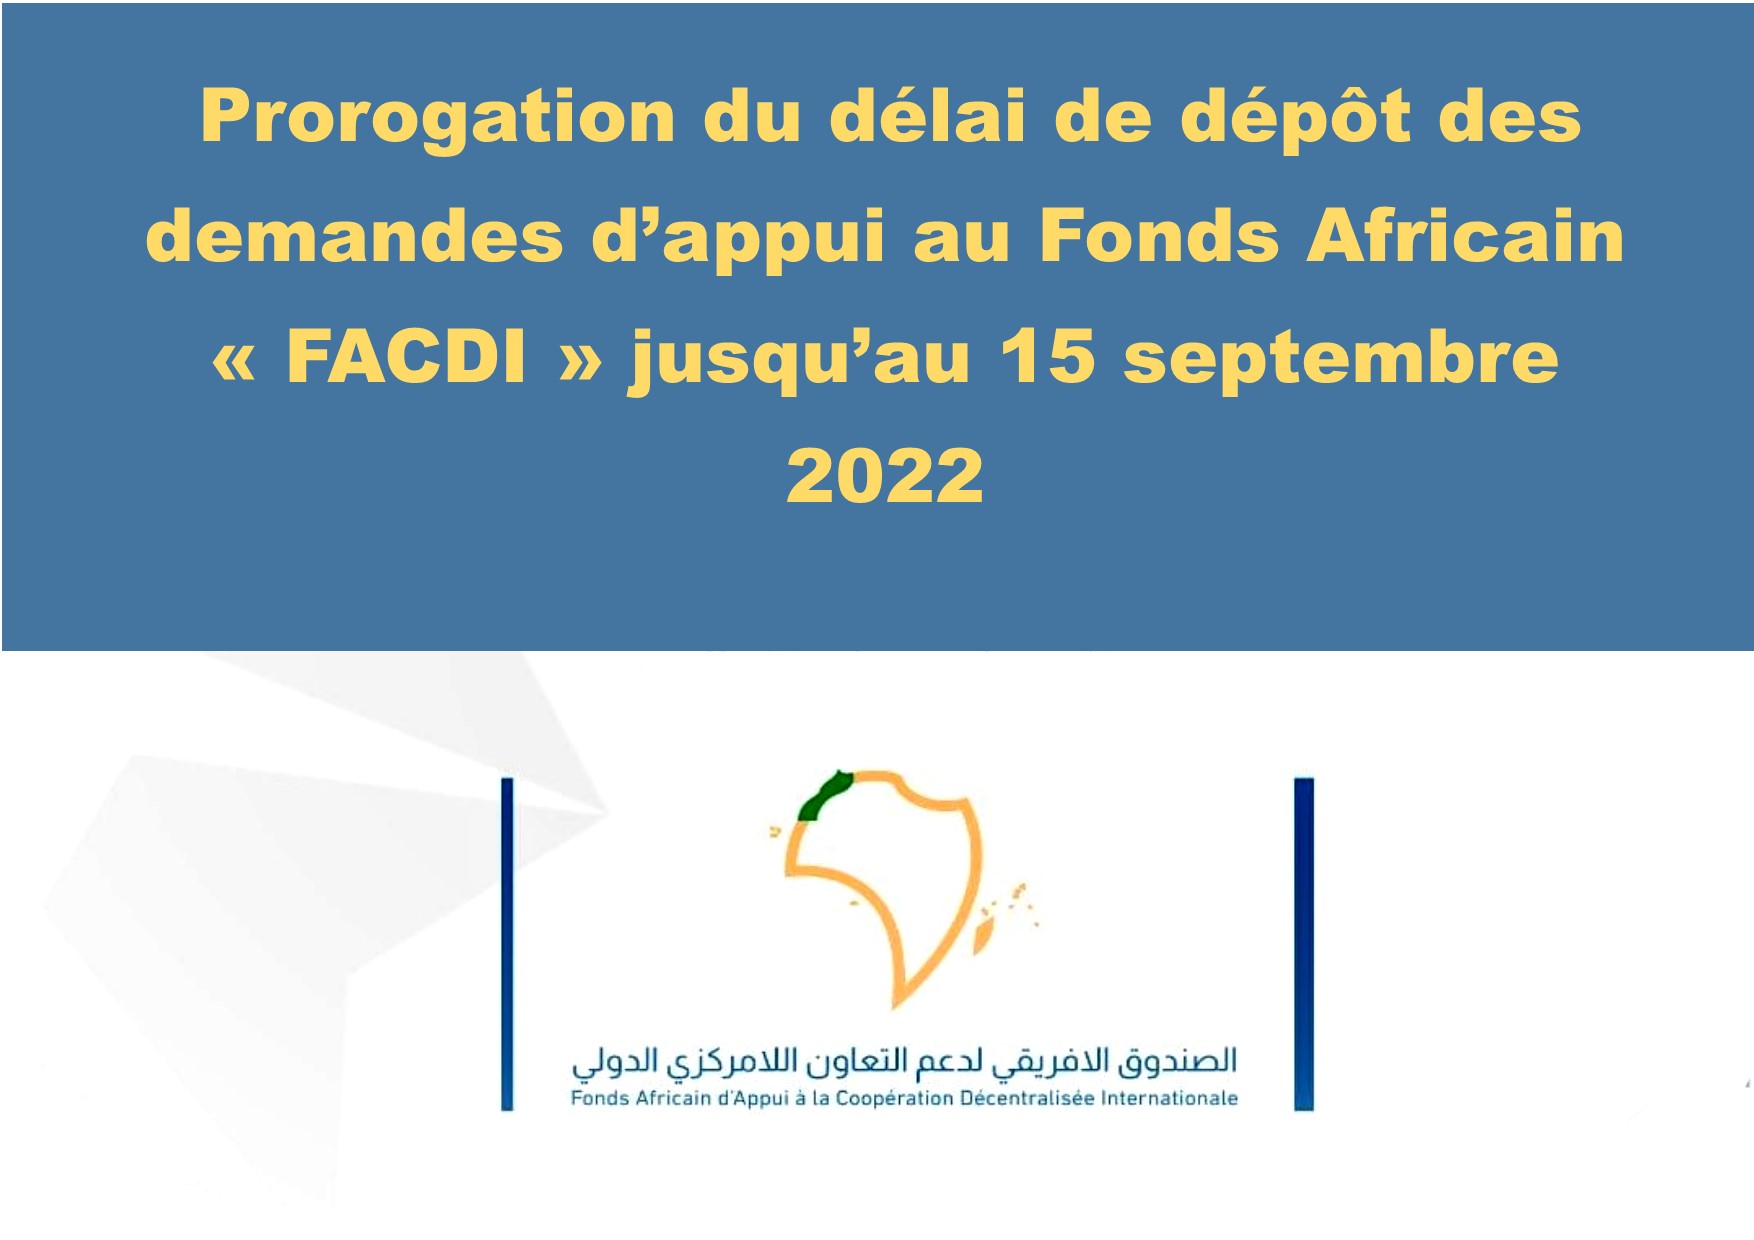 Prorogation du délai de dépôt des demandes d’appui au fonds africain « FACDI » jusqu’au 15 septembre 2022